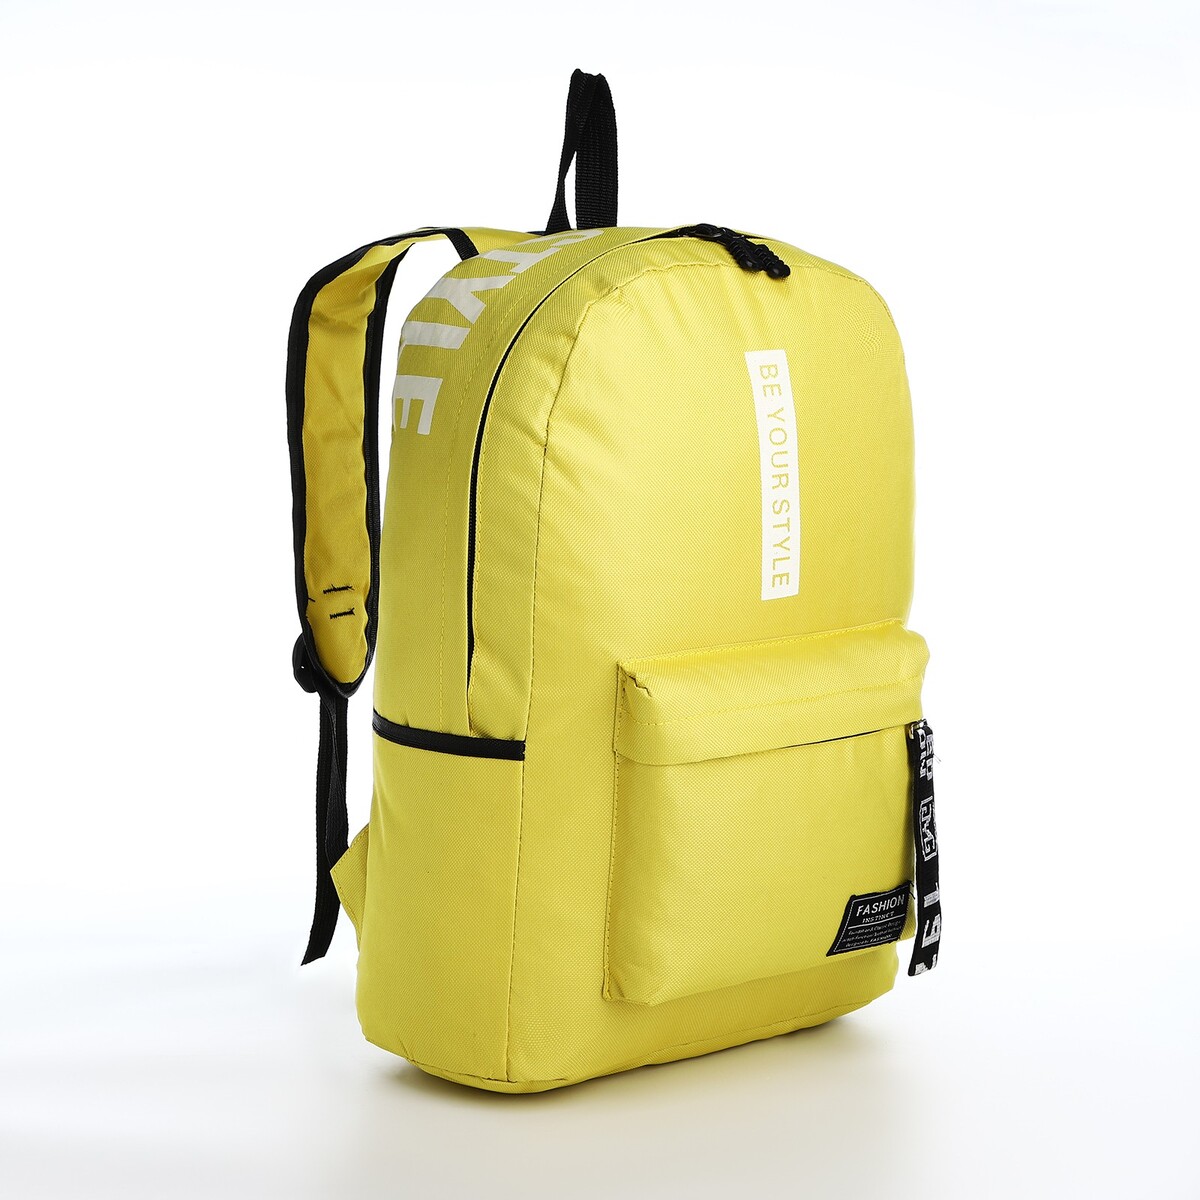 Рюкзак на молнии, наружный карман, 2 боковых кармана, цвет желтый рюкзак складной отдел на молнии наружный карман 2 боковых кармана